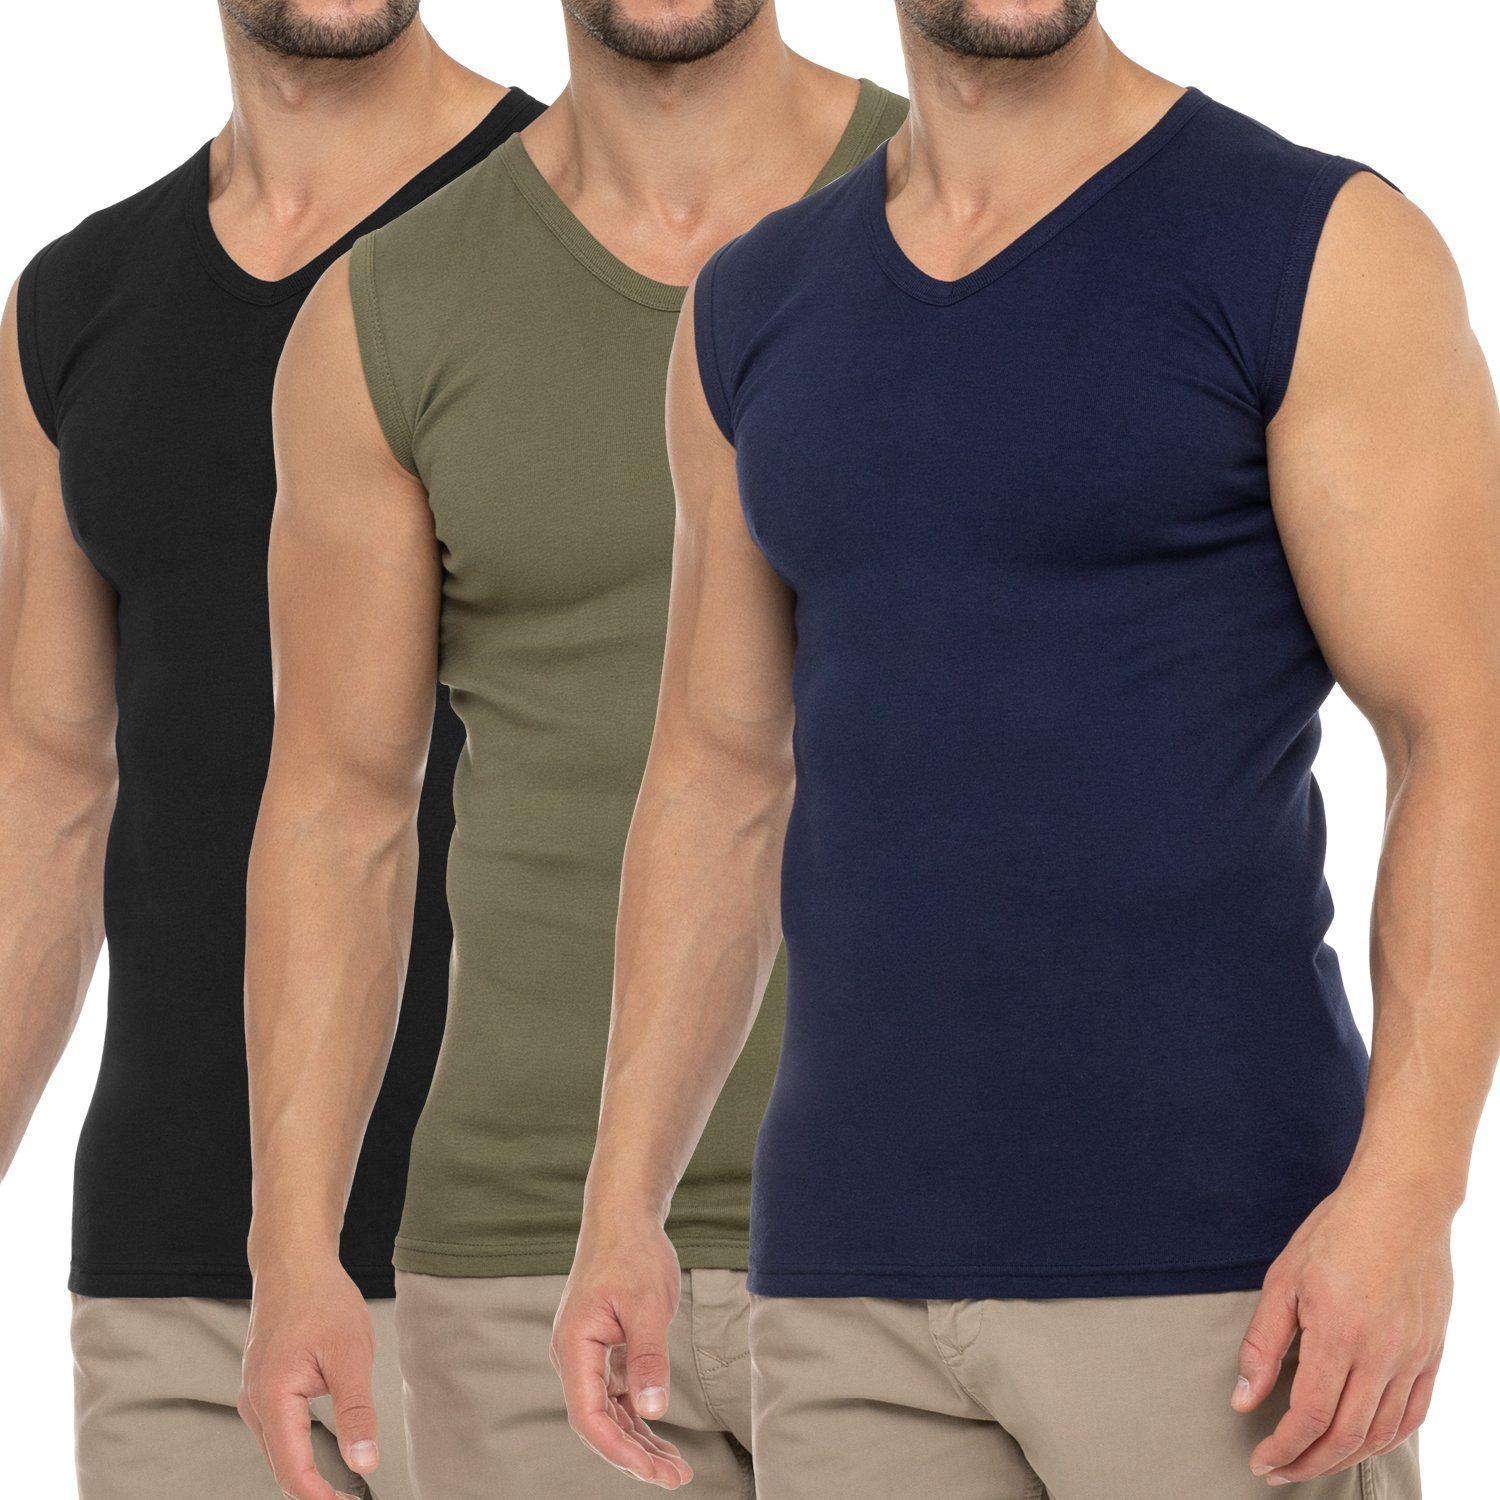 Olive Herren Shirt Pack) Schwarz V-Neck / celodoro Muskelshirt / Business Unterhemd Marine Muscle (3er